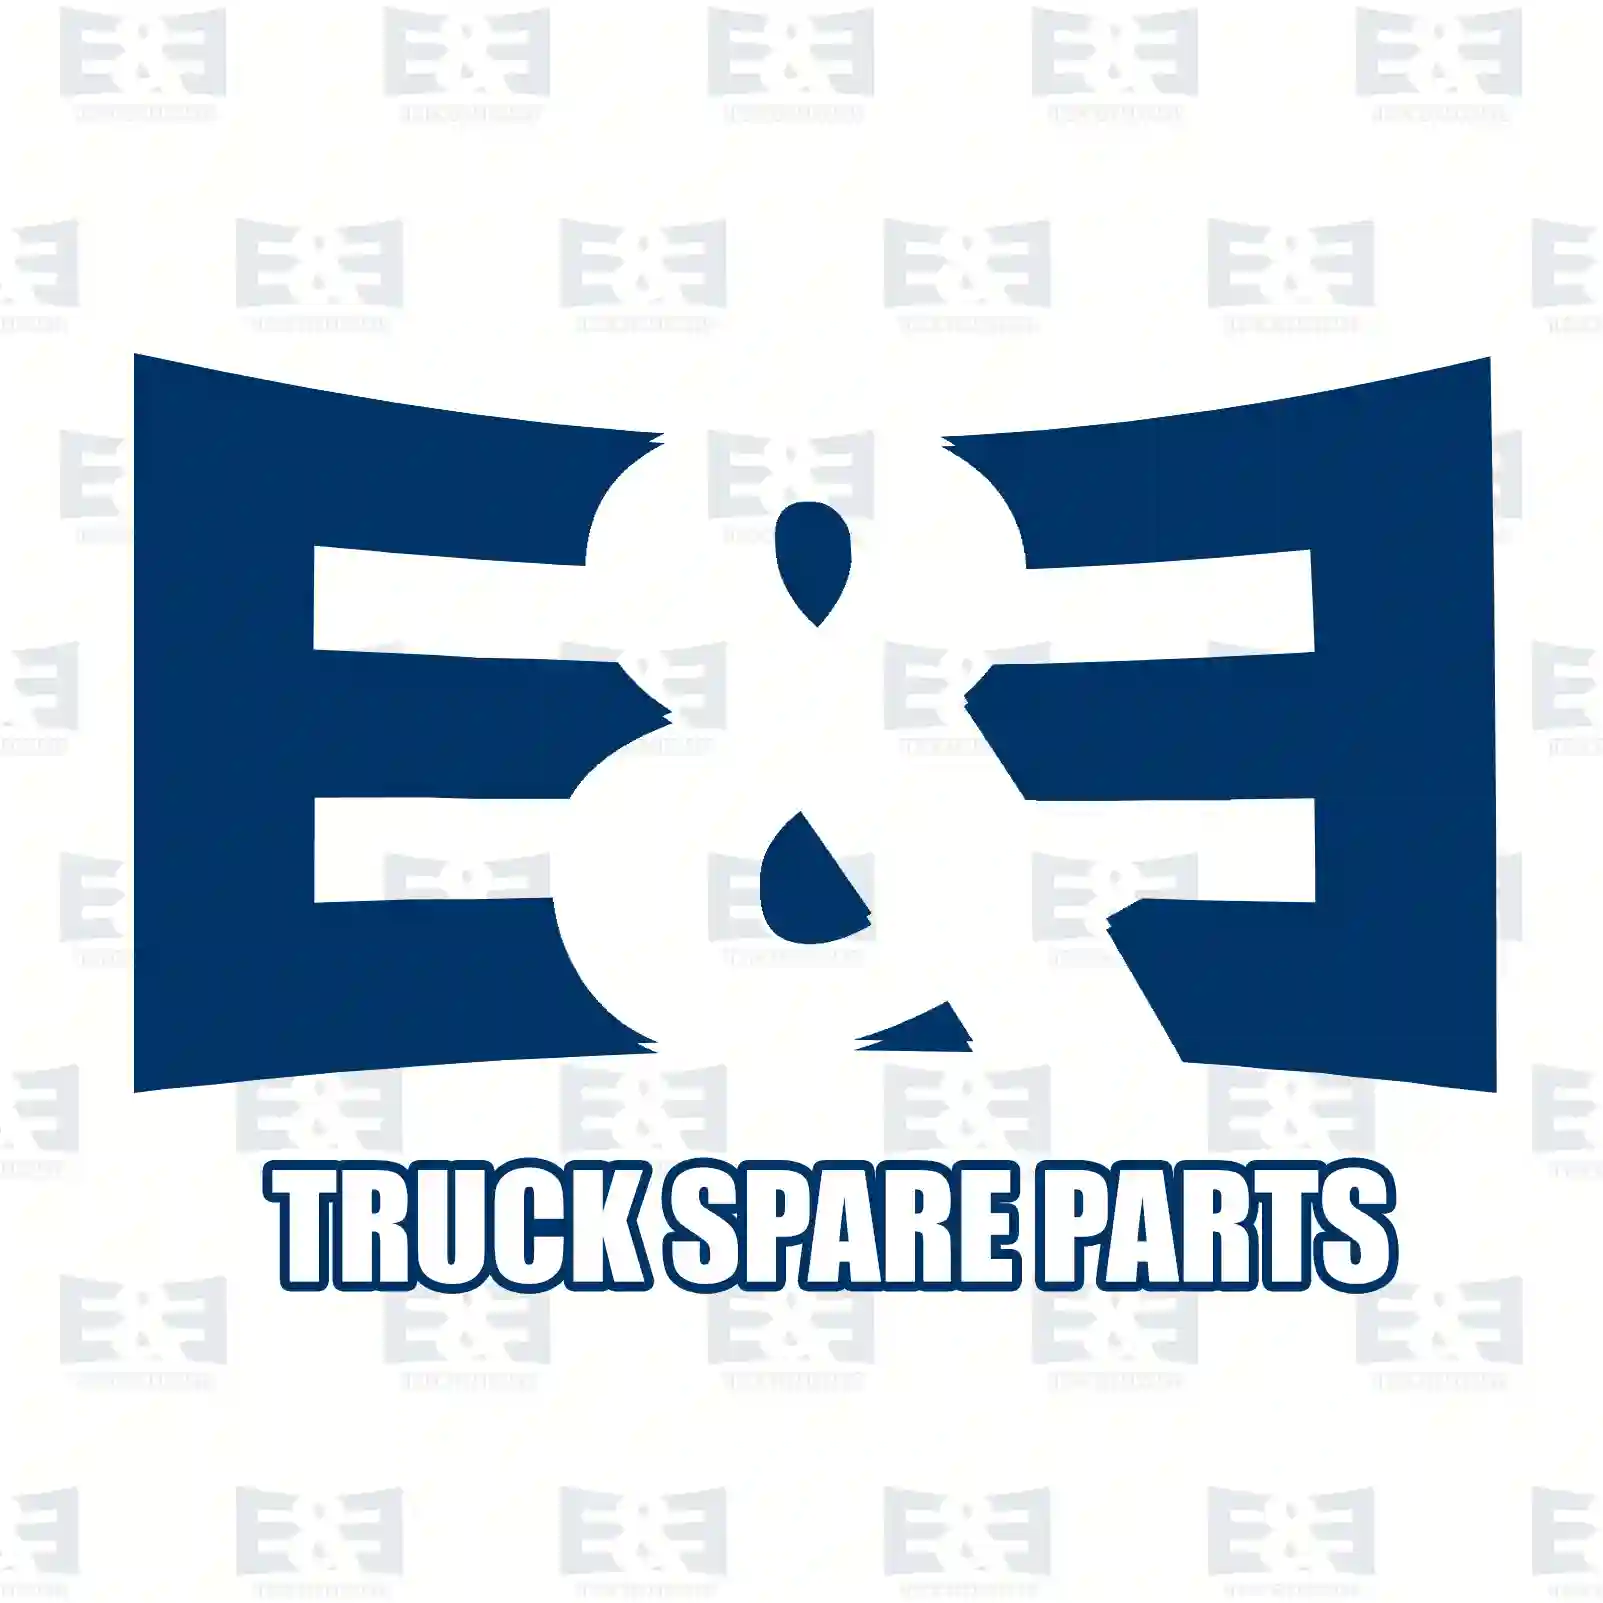 Overhaul kit, 2E2206837, 3095202 ||  2E2206837 E&E Truck Spare Parts | Truck Spare Parts, Auotomotive Spare Parts Overhaul kit, 2E2206837, 3095202 ||  2E2206837 E&E Truck Spare Parts | Truck Spare Parts, Auotomotive Spare Parts